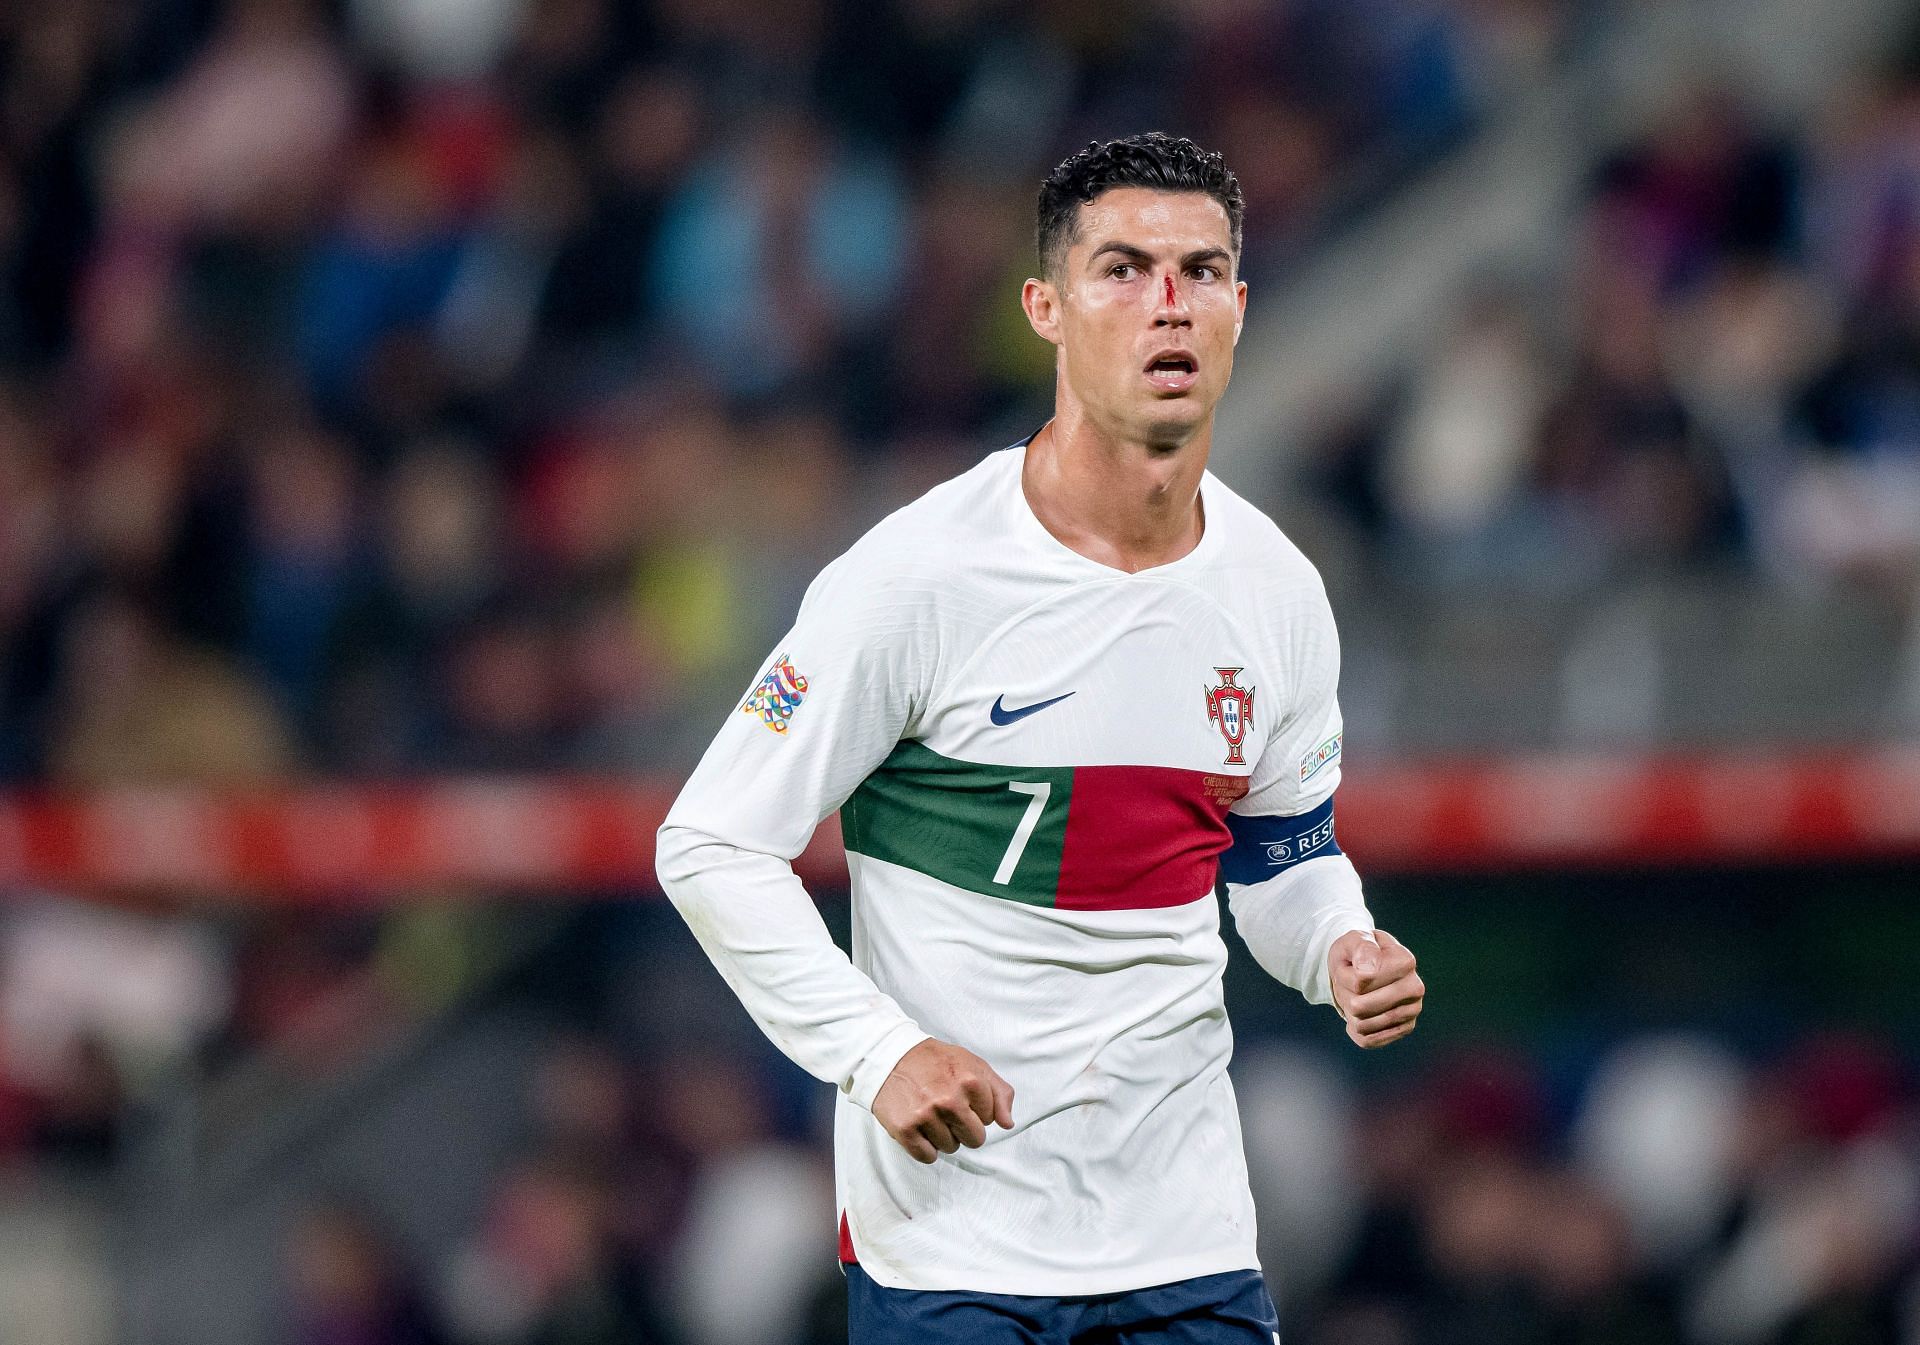 Ronaldo in action against Czech Republic: UEFA Nations League - League Path Group 2